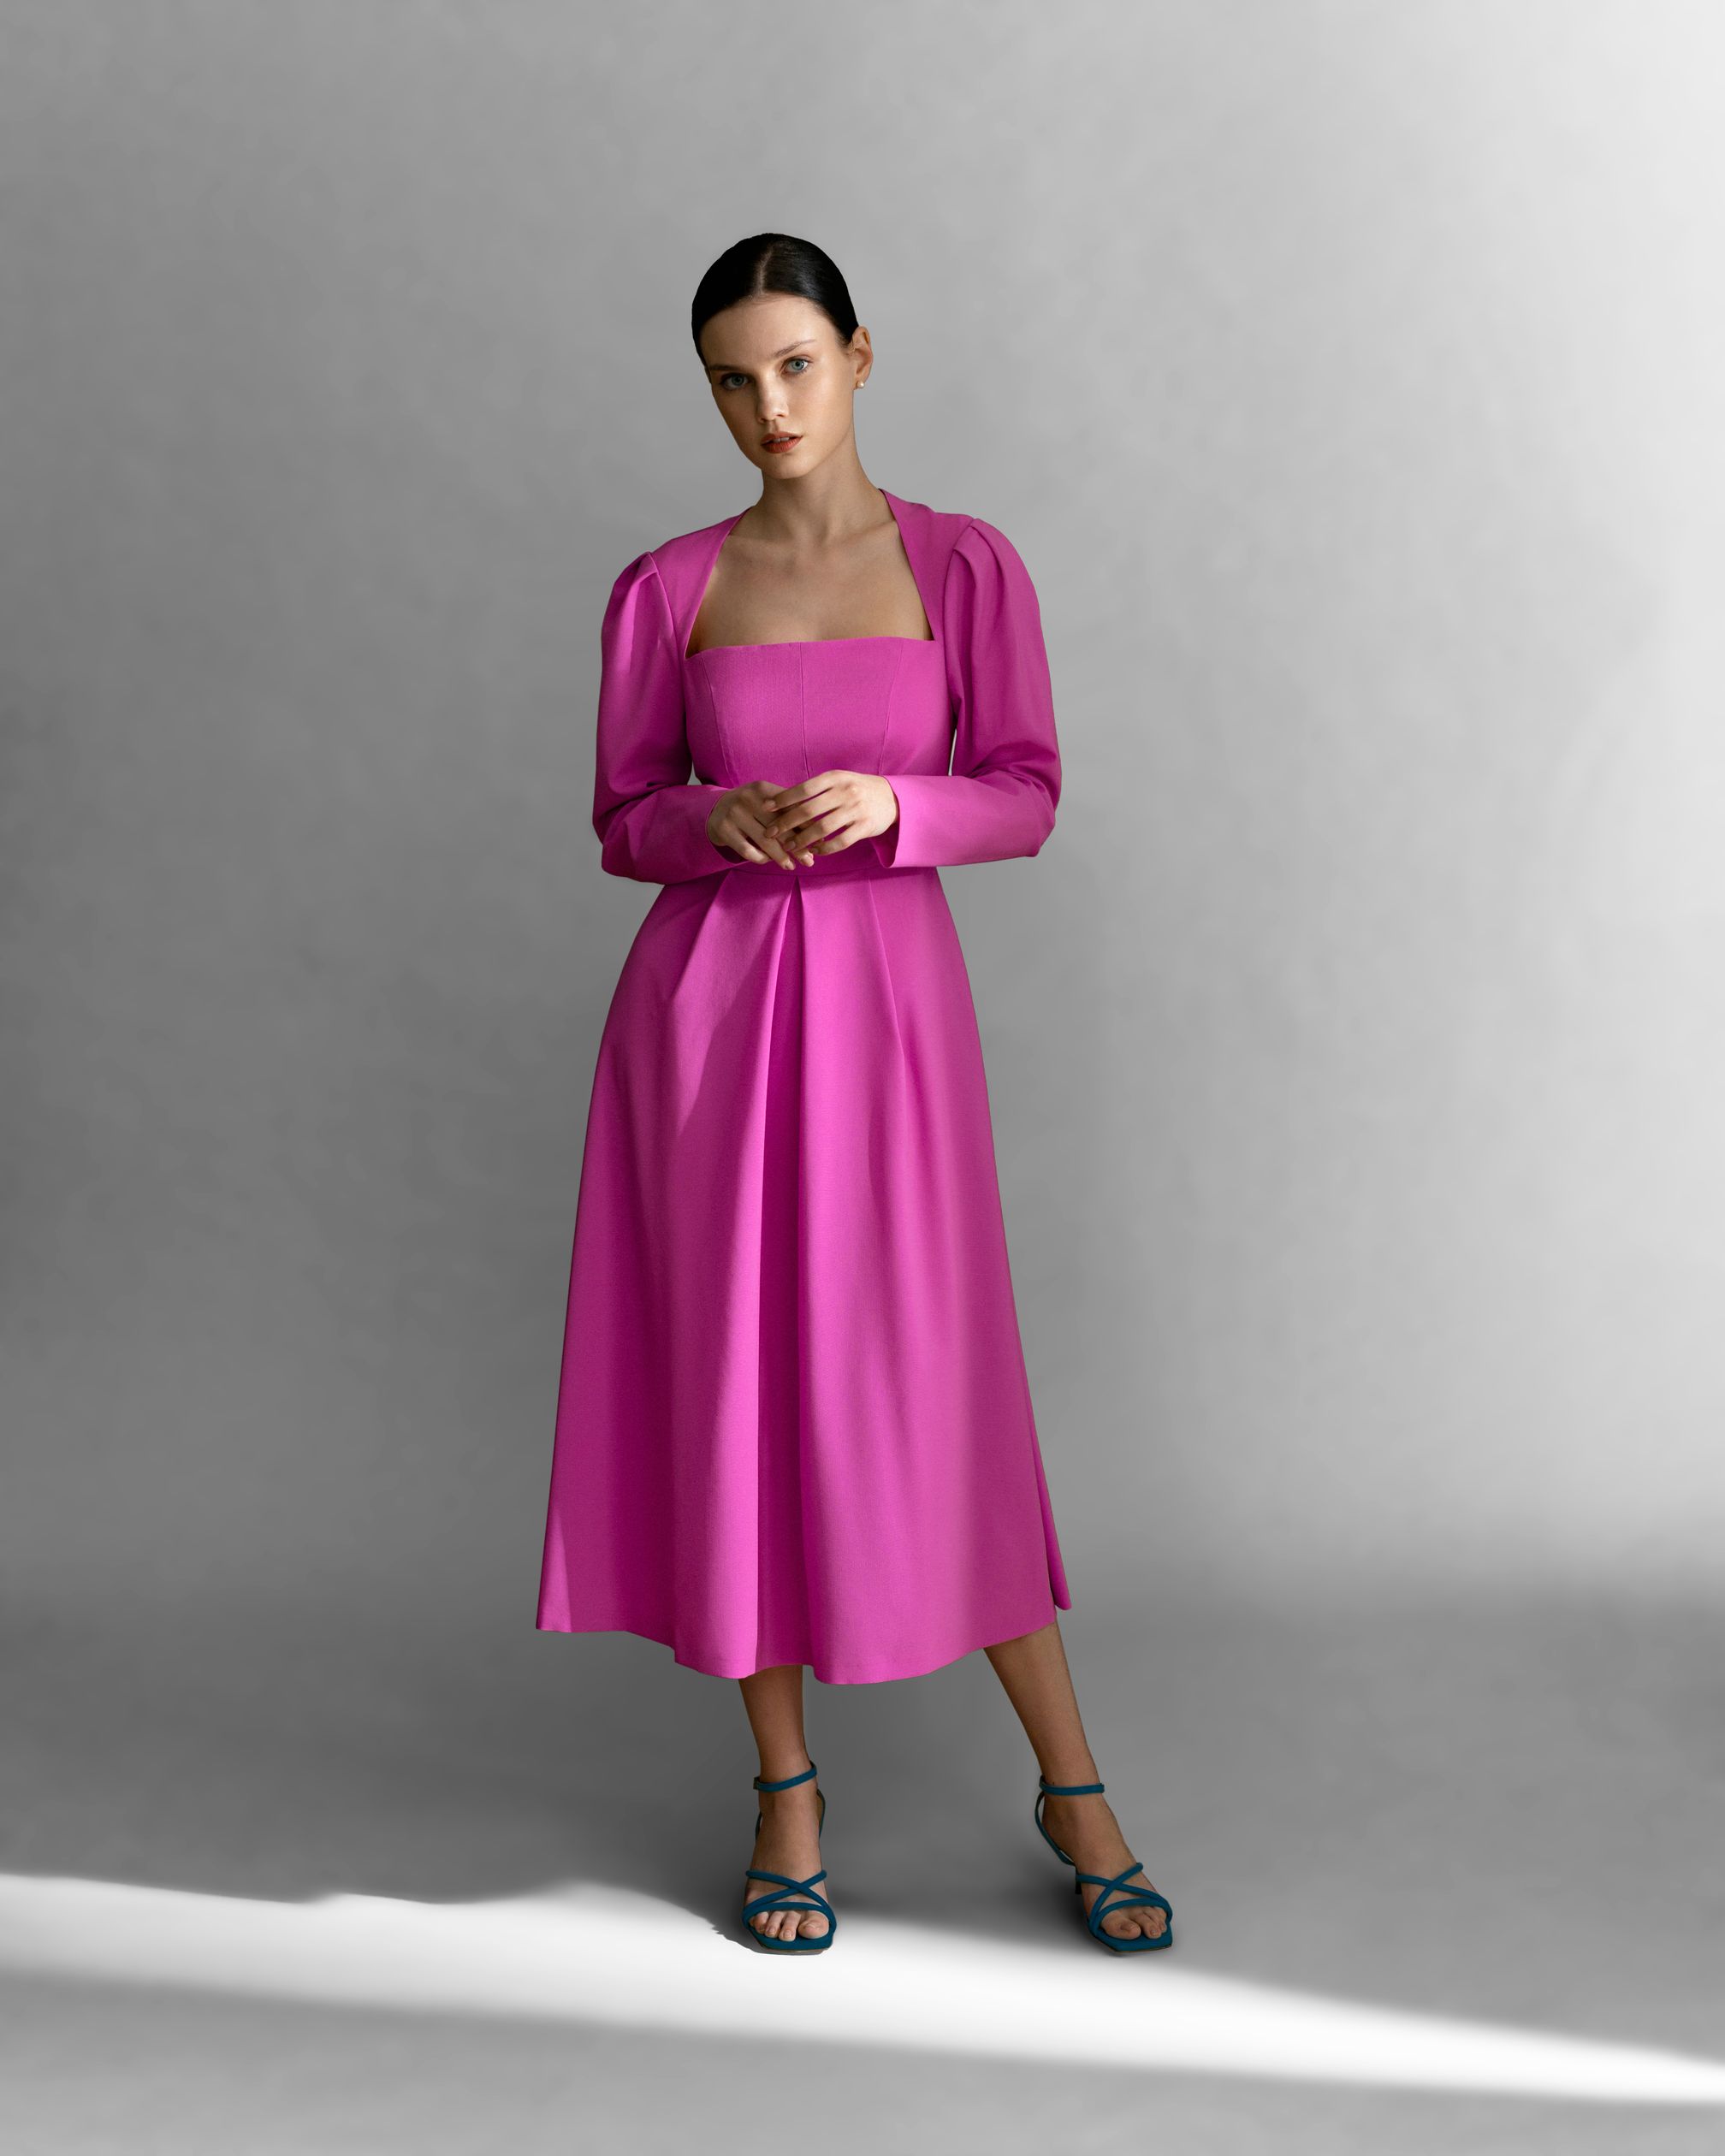 Розовое платье миди от бренда одежды EL ME в Москве. Шоу рум в ГУМ (bosco)